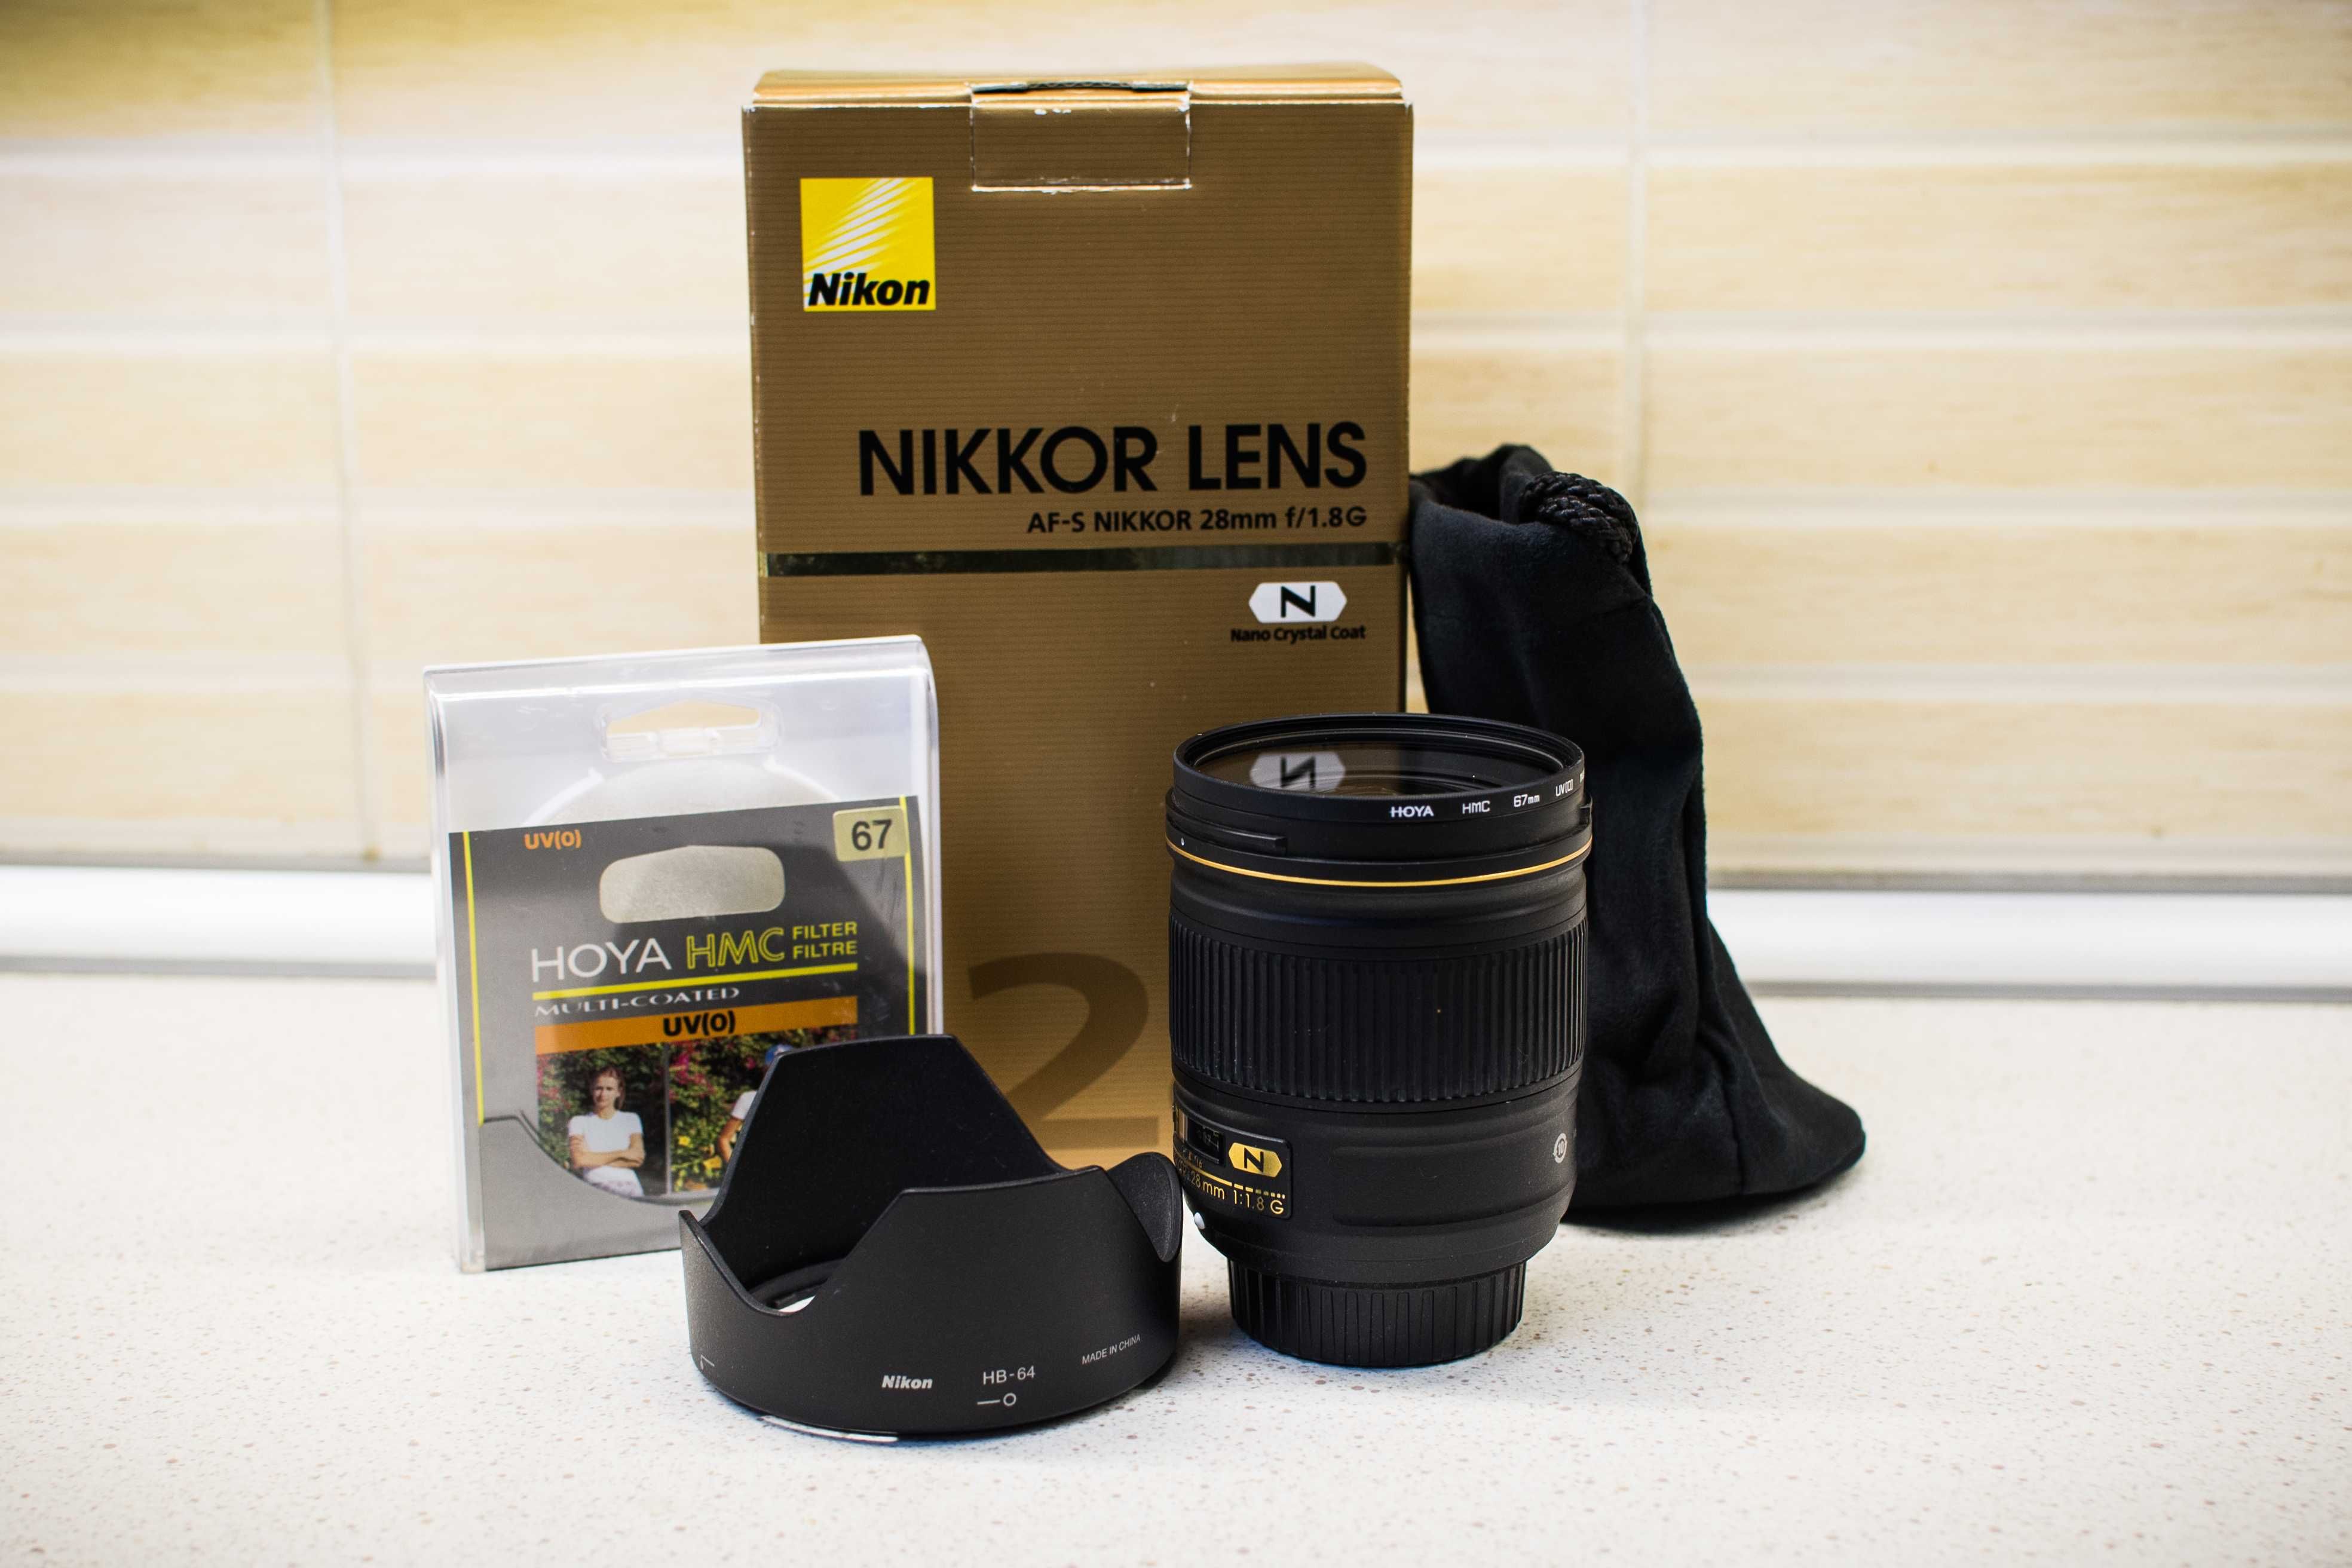 Nikon AF-S 28mm f/1.8G Full frame